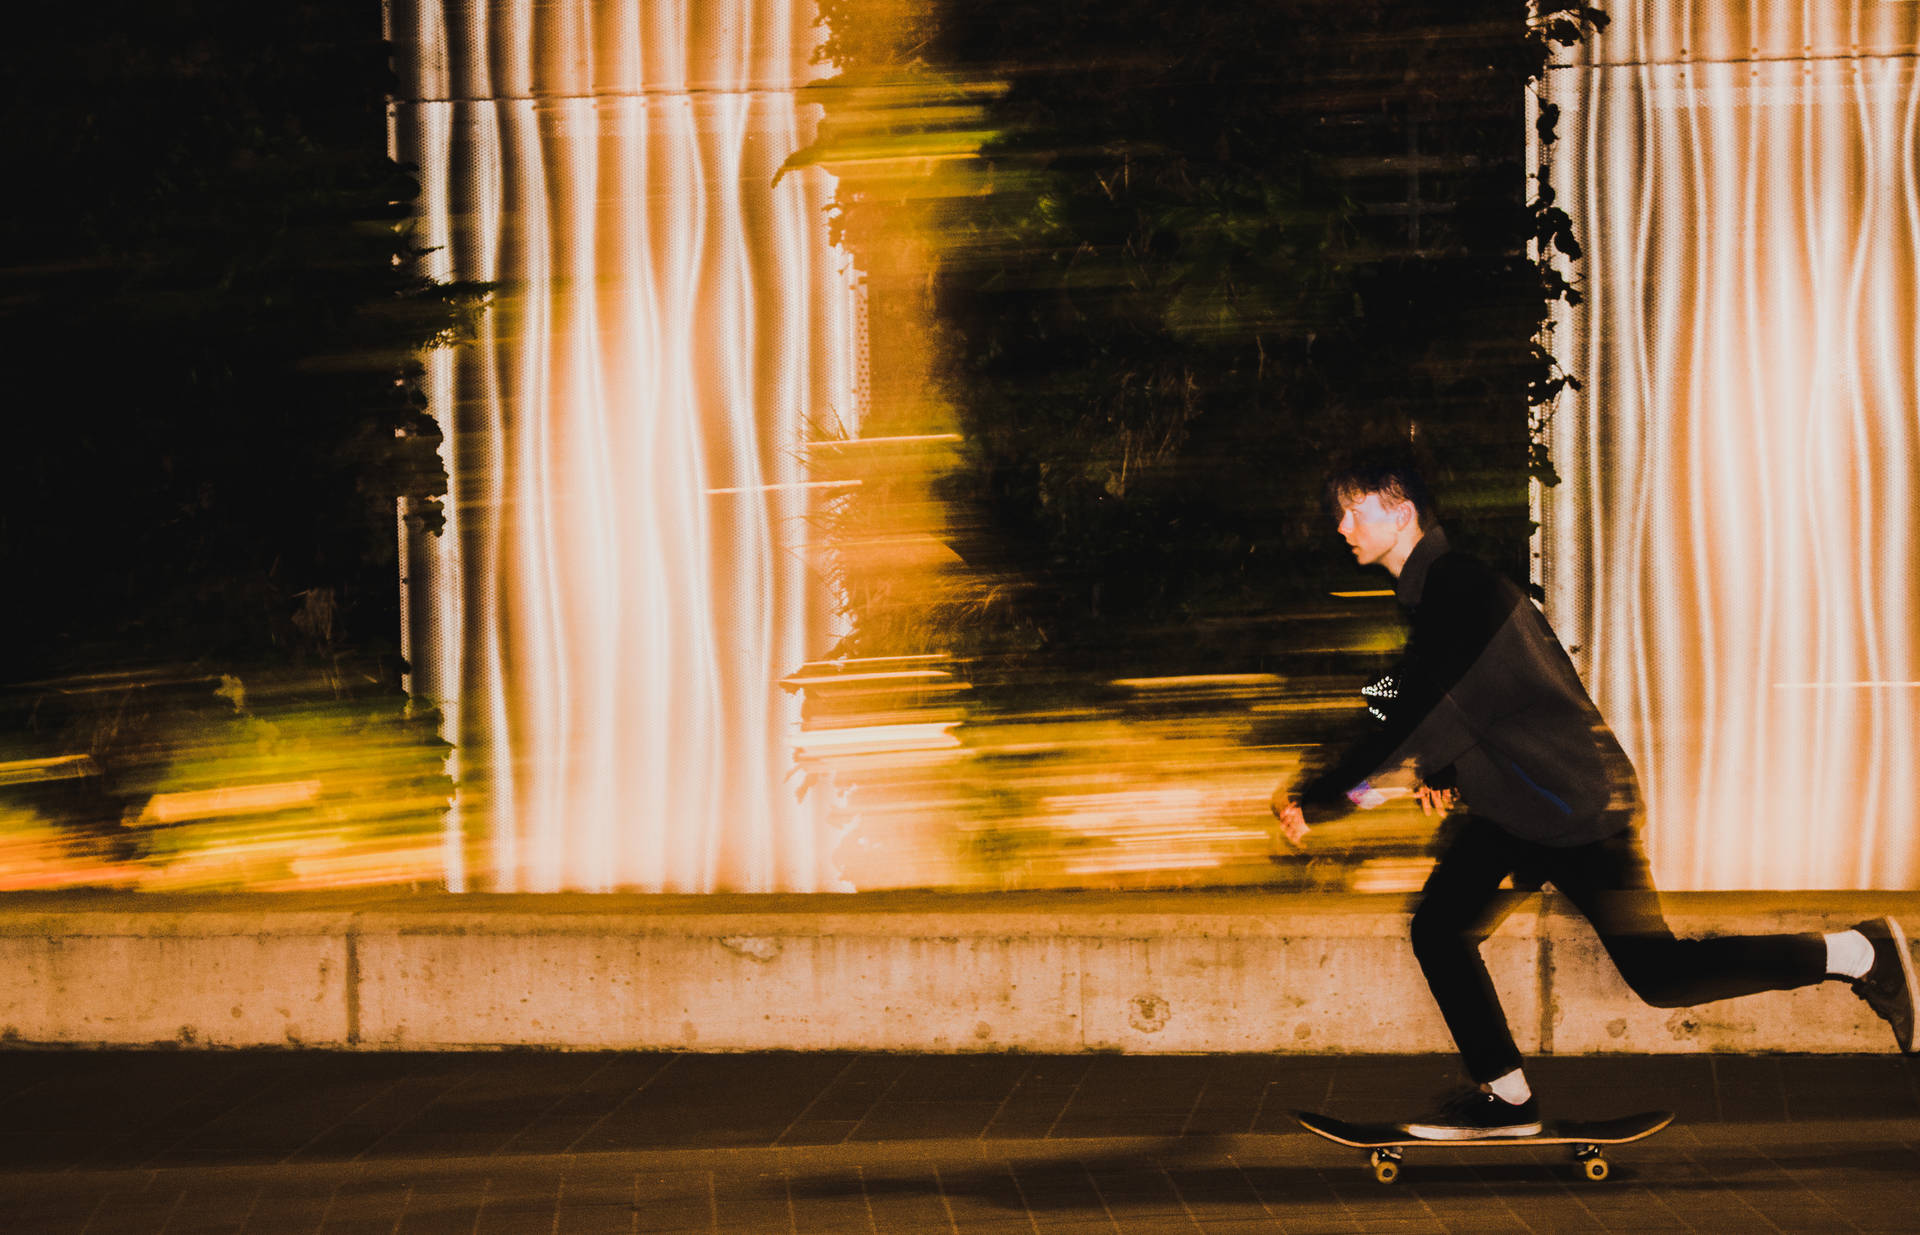 Taking a night time skateboard stroll. Wallpaper